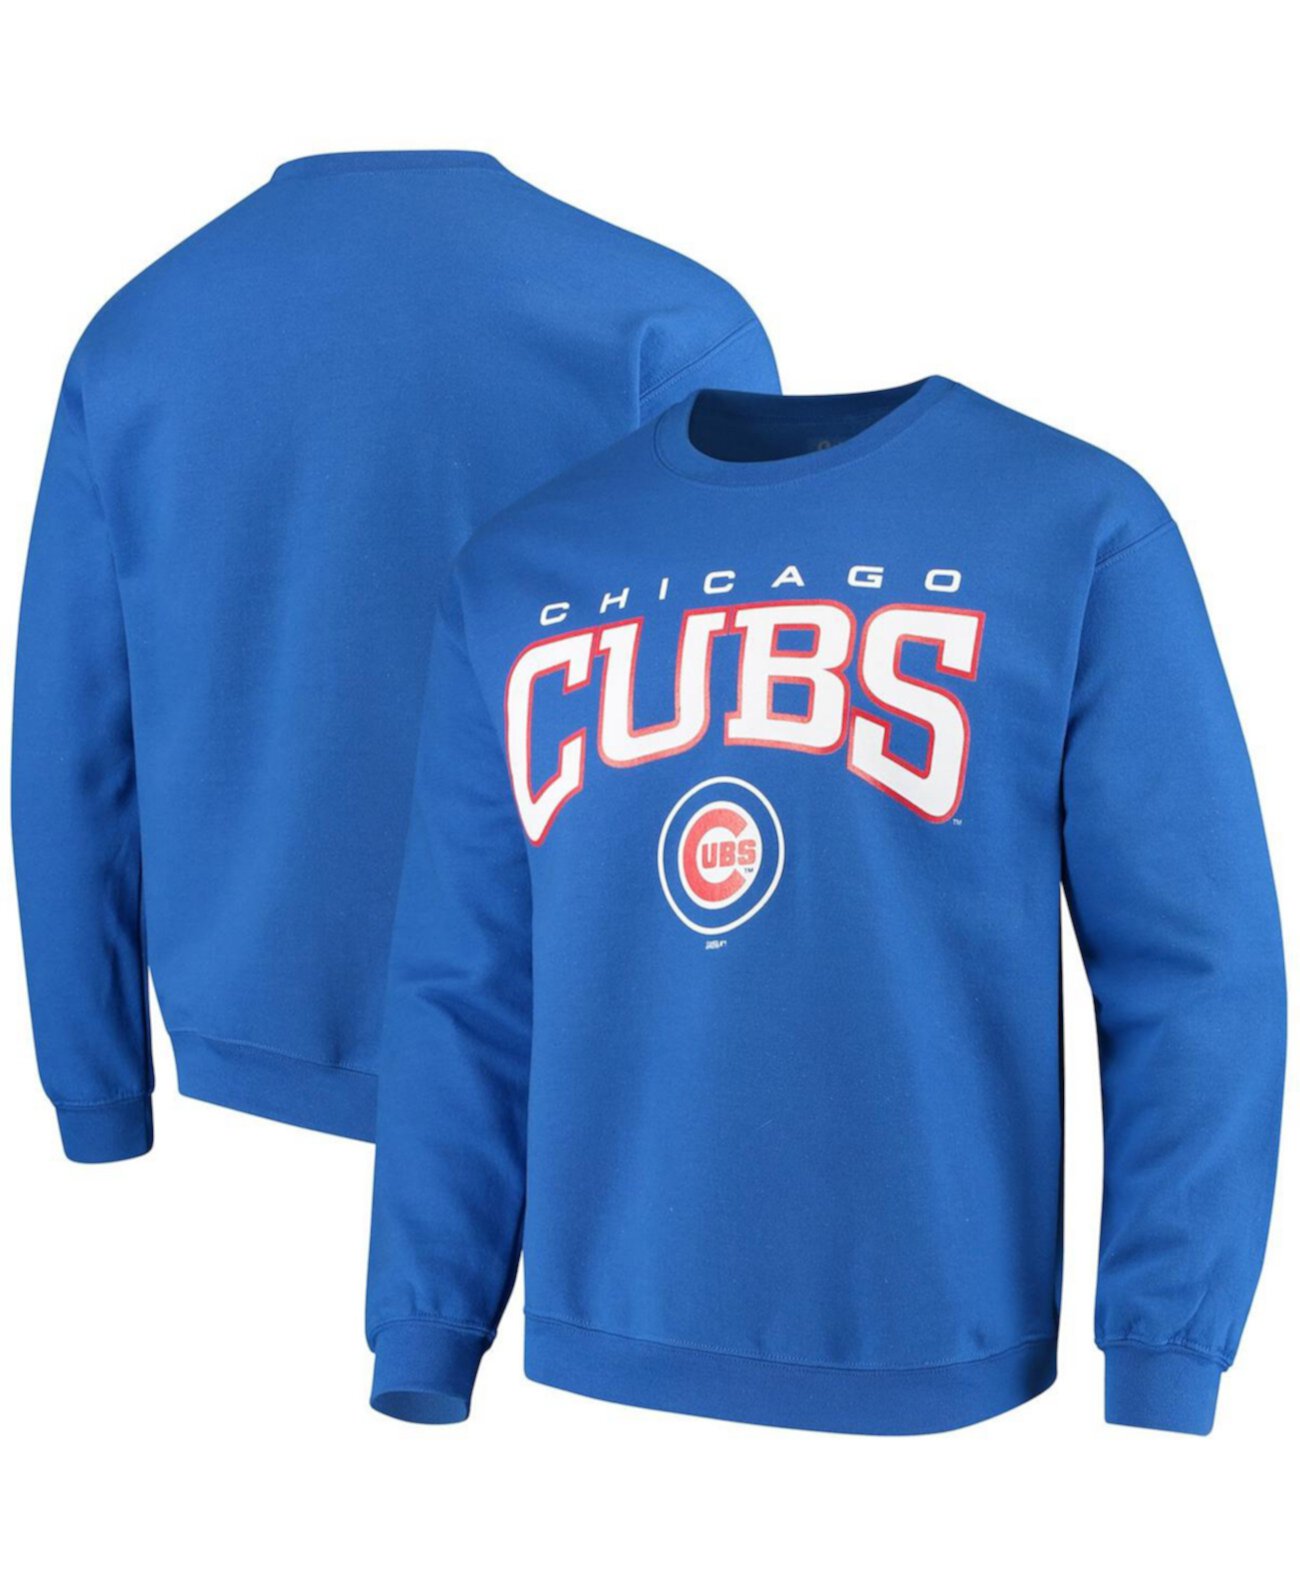 Мужской пуловер с круглым вырезом Royal Chicago Cubs Stitches